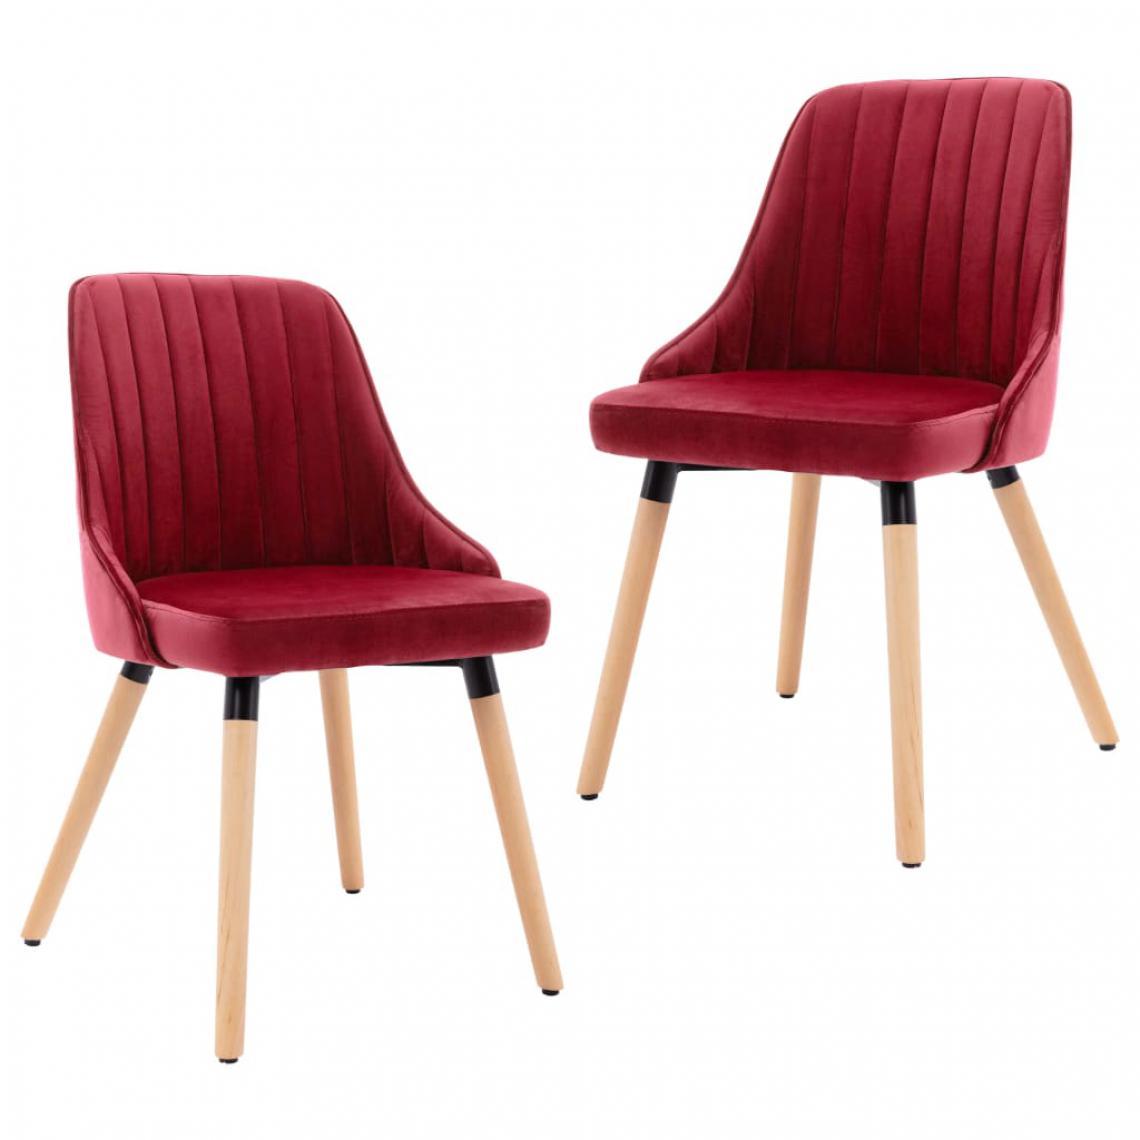 Icaverne - Splendide Fauteuils et chaises serie Dili Chaises de salle à manger 2 pcs Rouge bordeaux Velours - Chaises